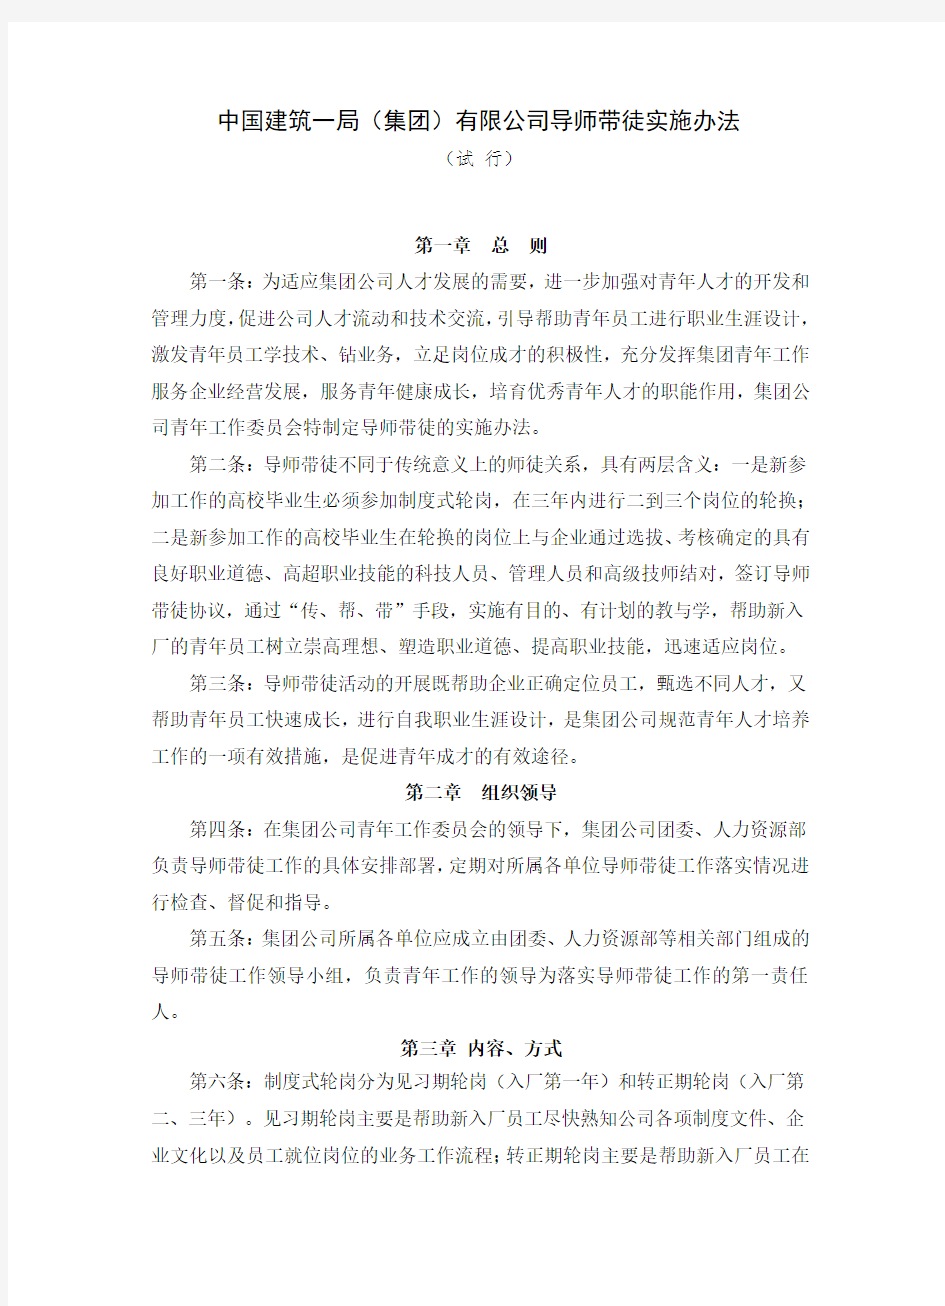 中国建筑一局集团公司导师带徒实施办法(最终版)